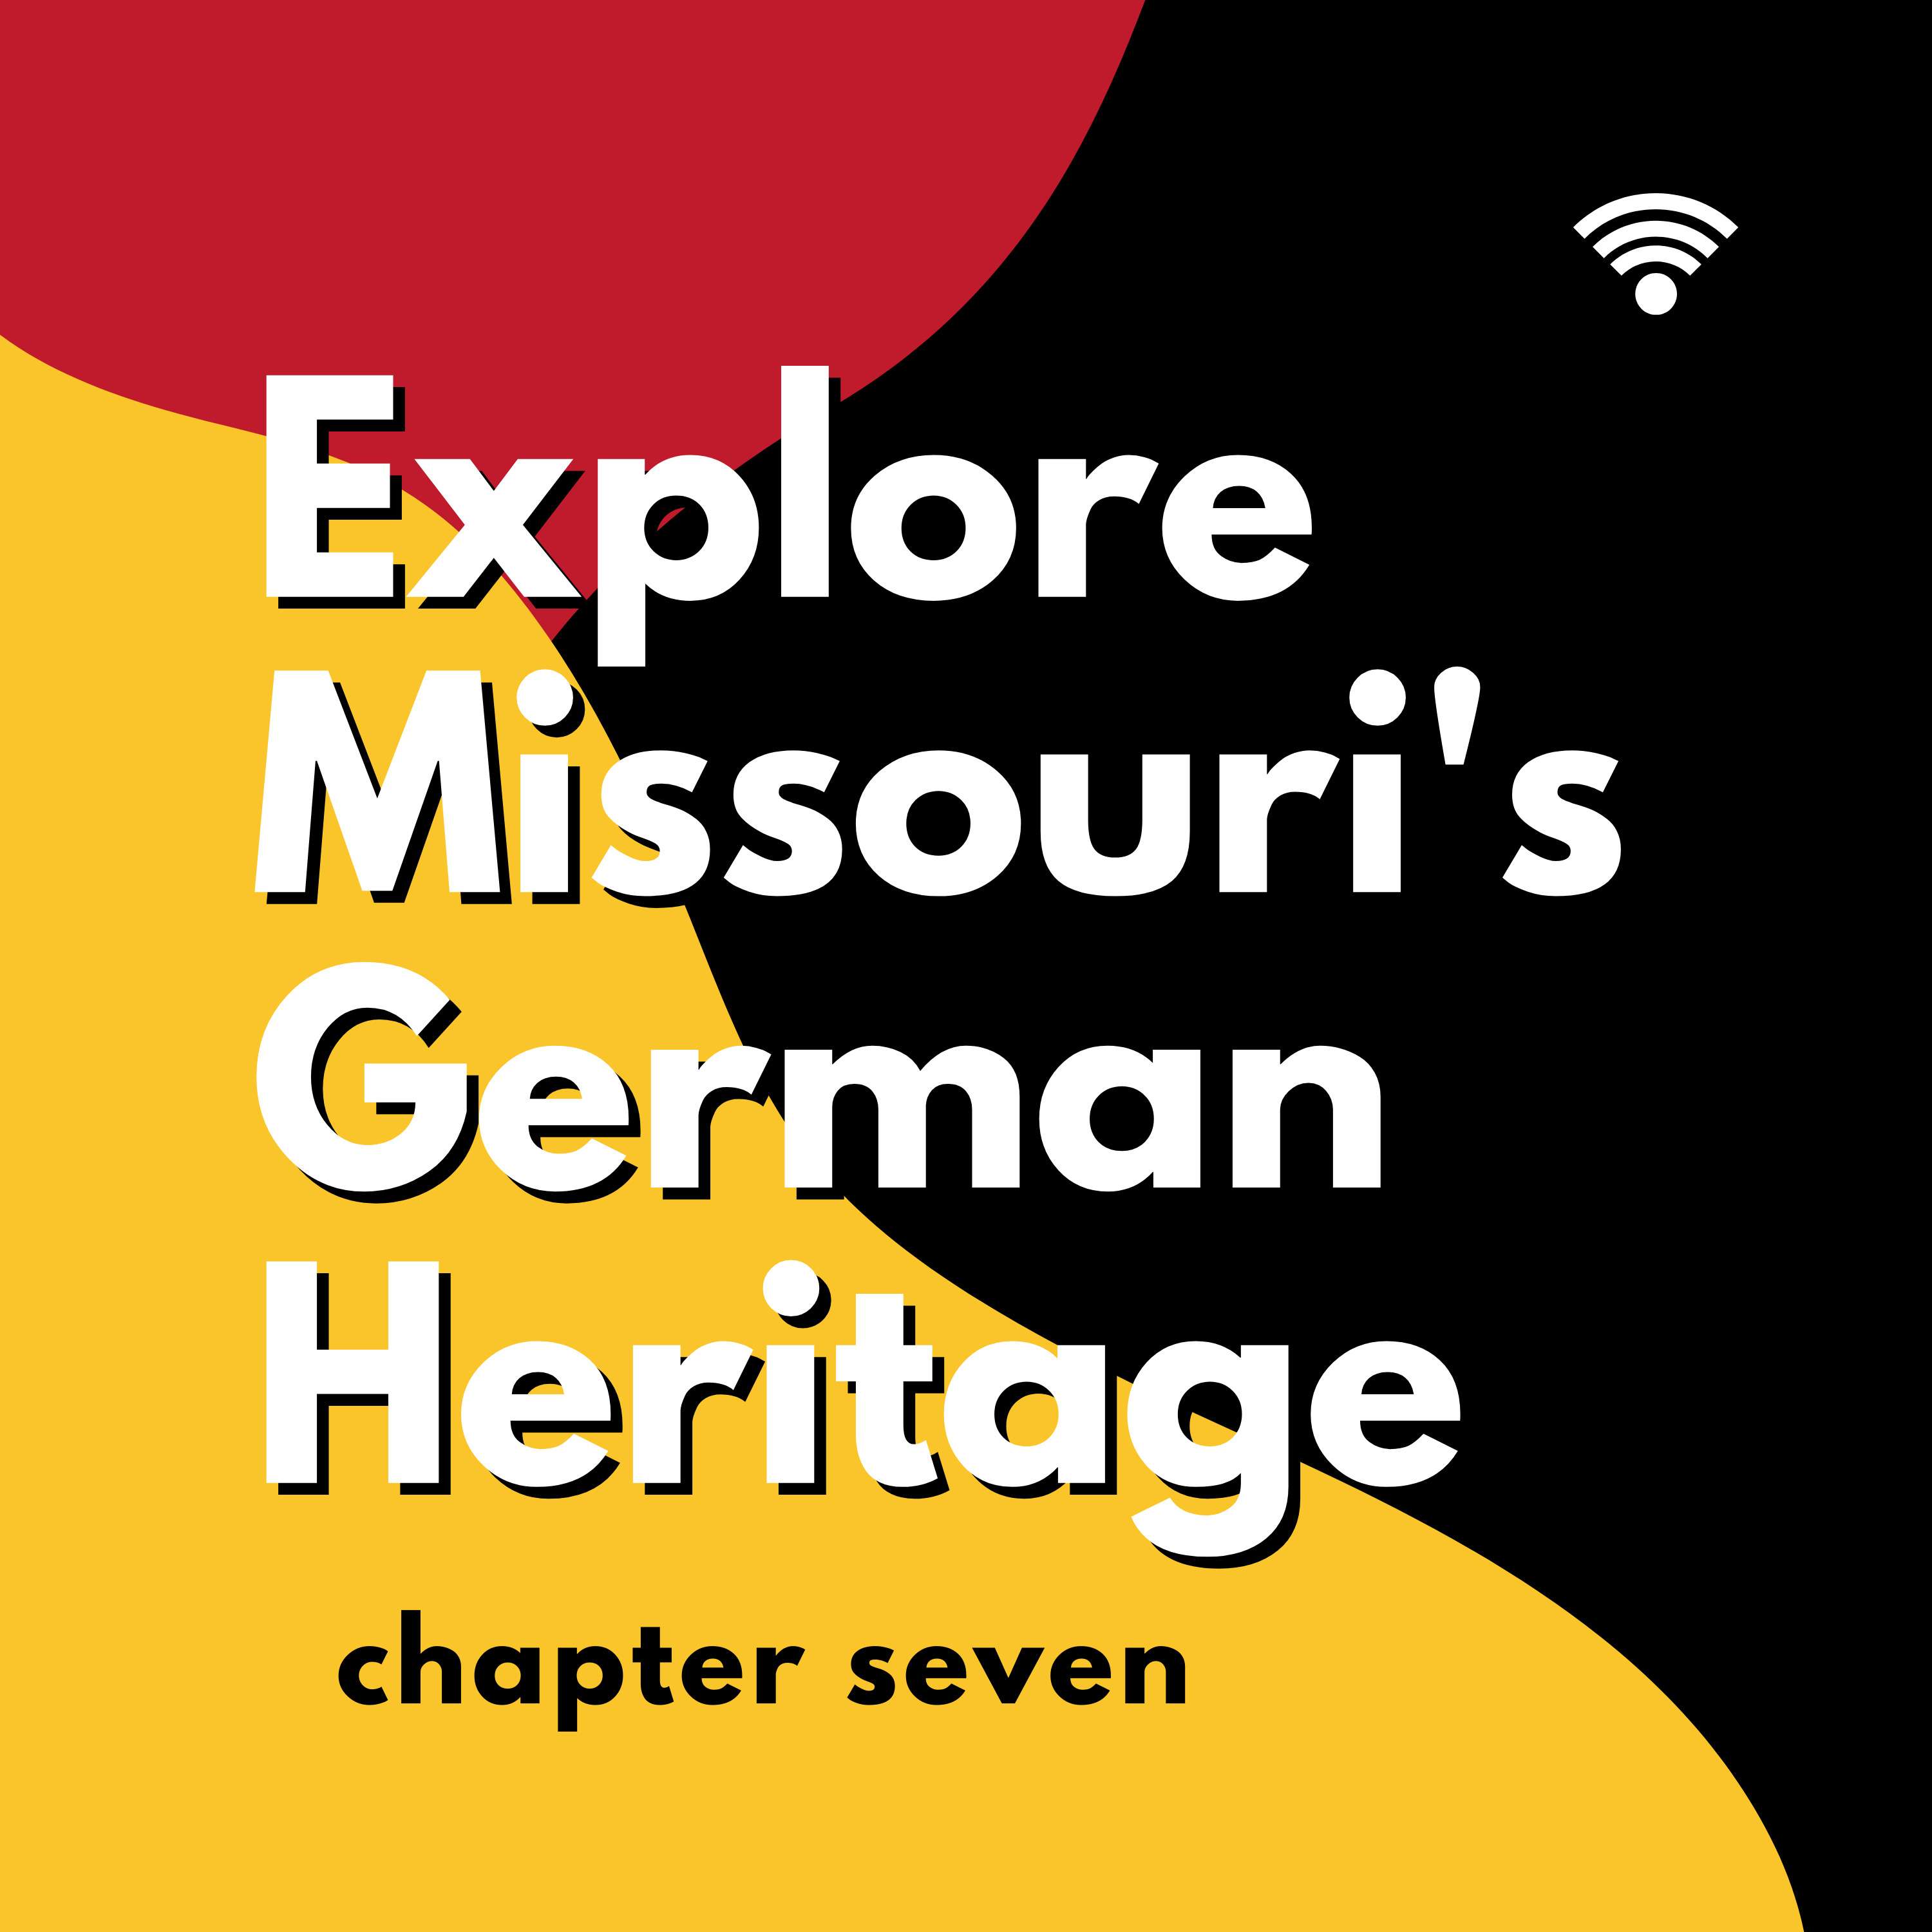 Chapter 7: “Remember Missouri’s German Heritage” (der Geist)